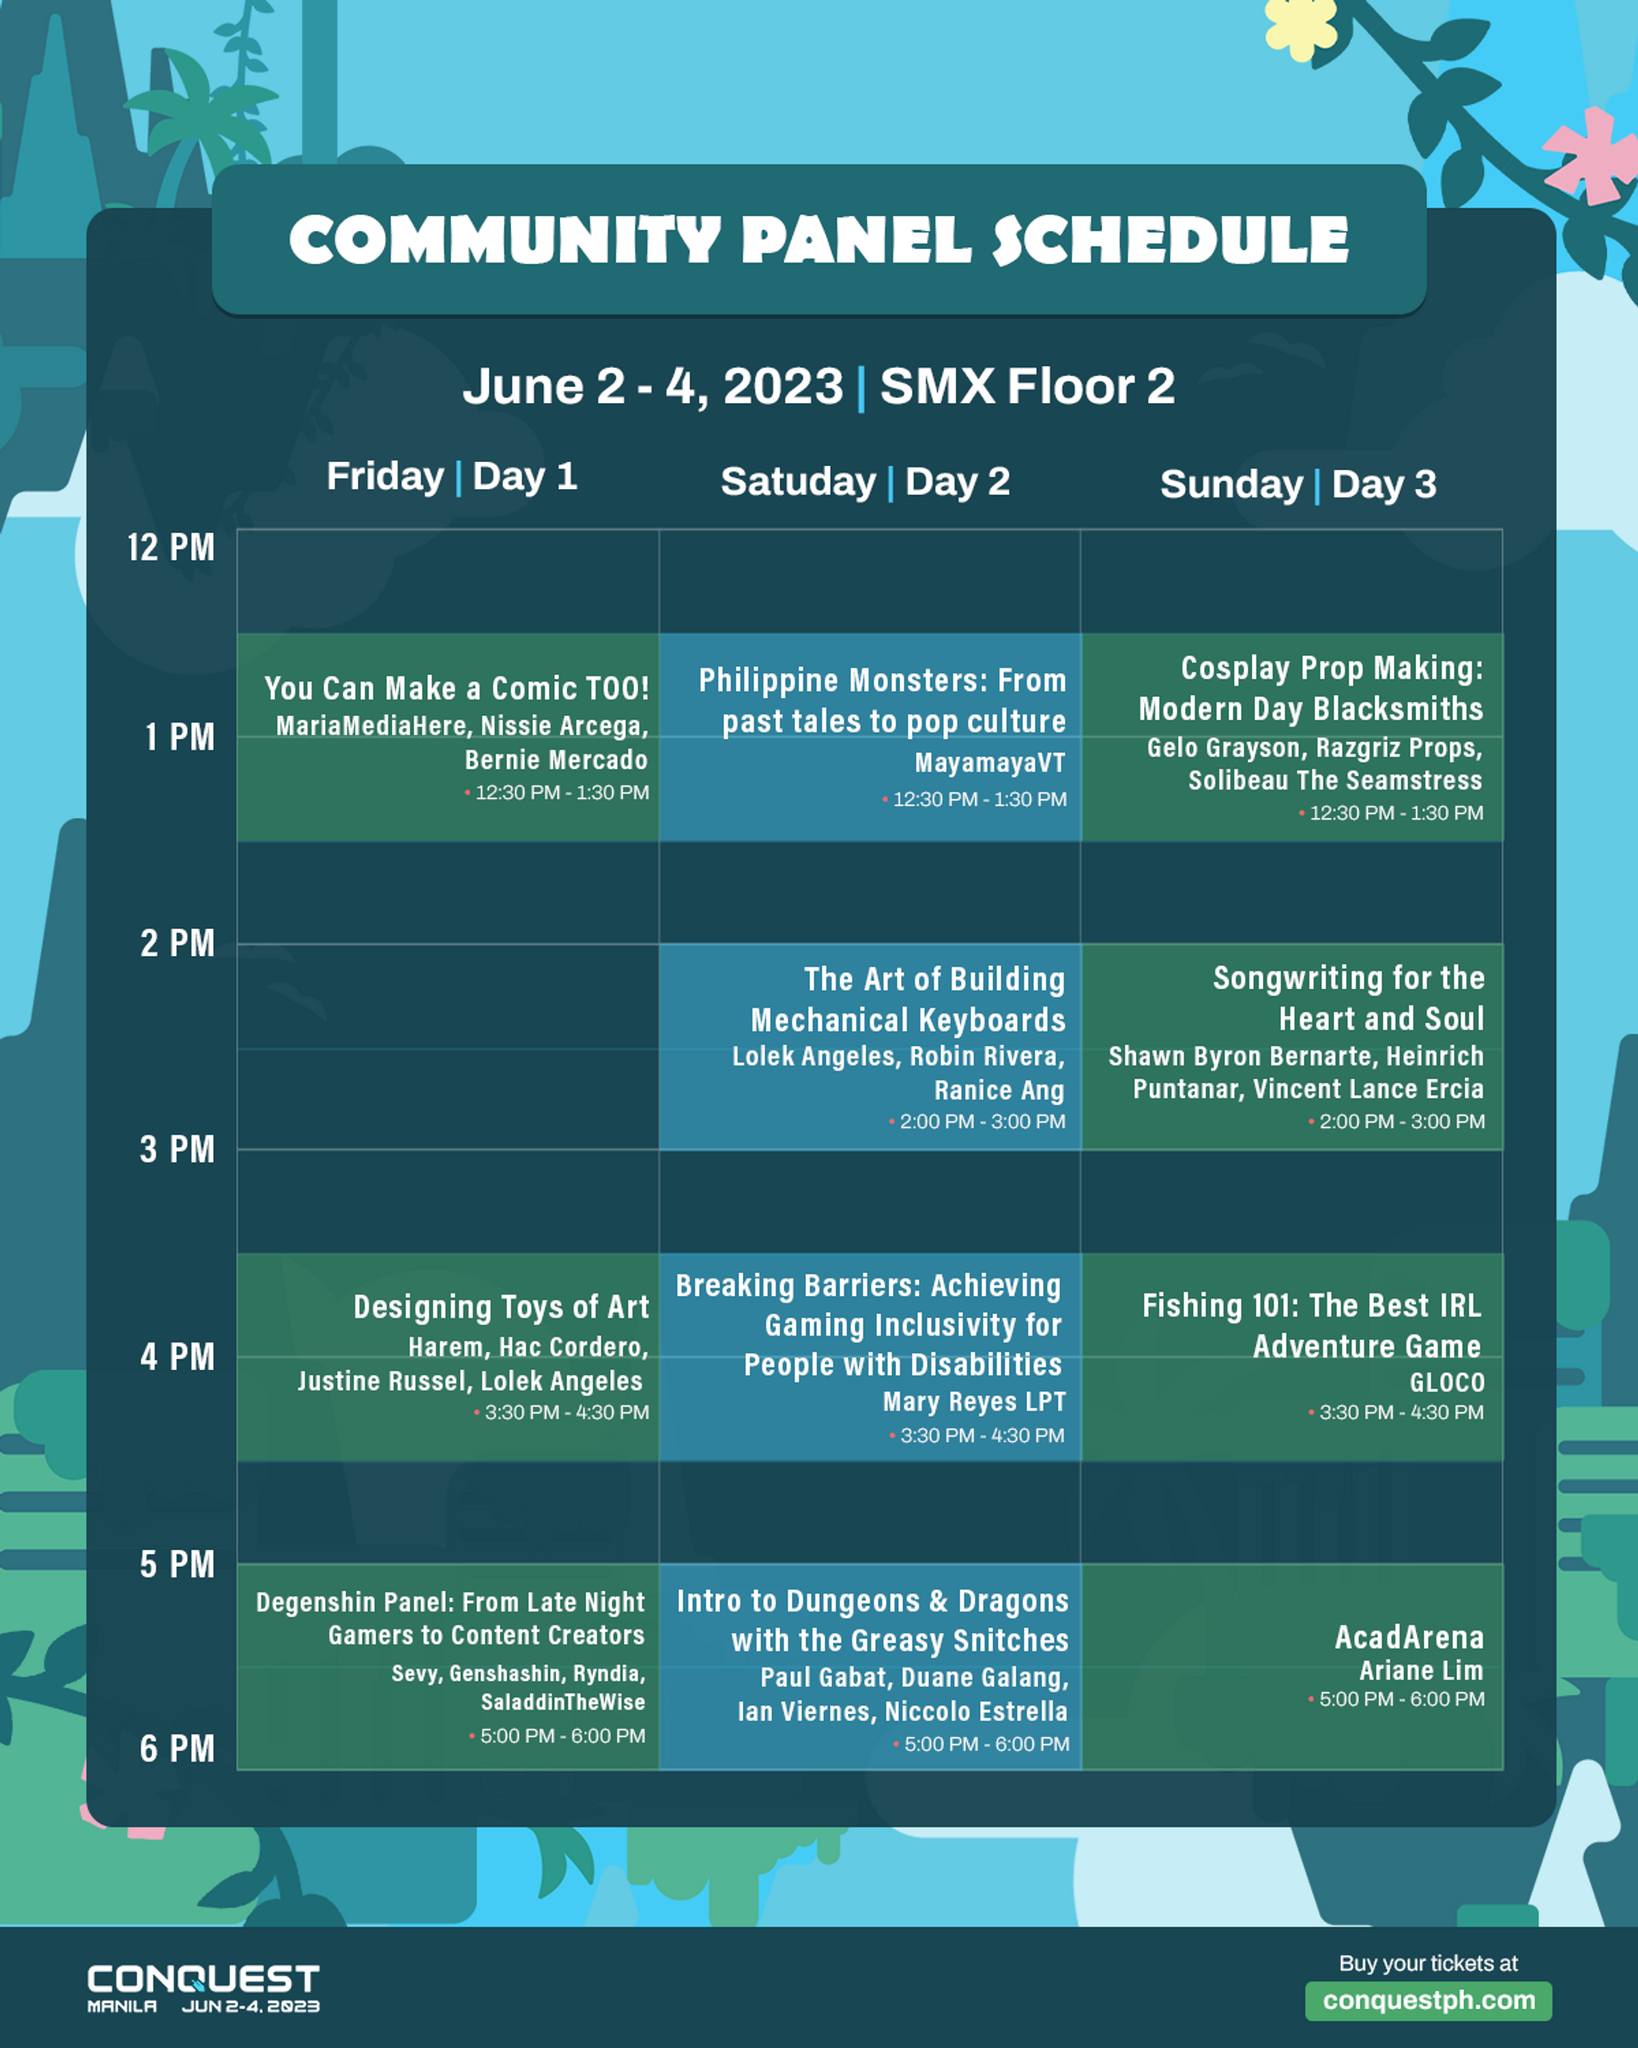 Conquest Festival 2023 Guide comunity panel